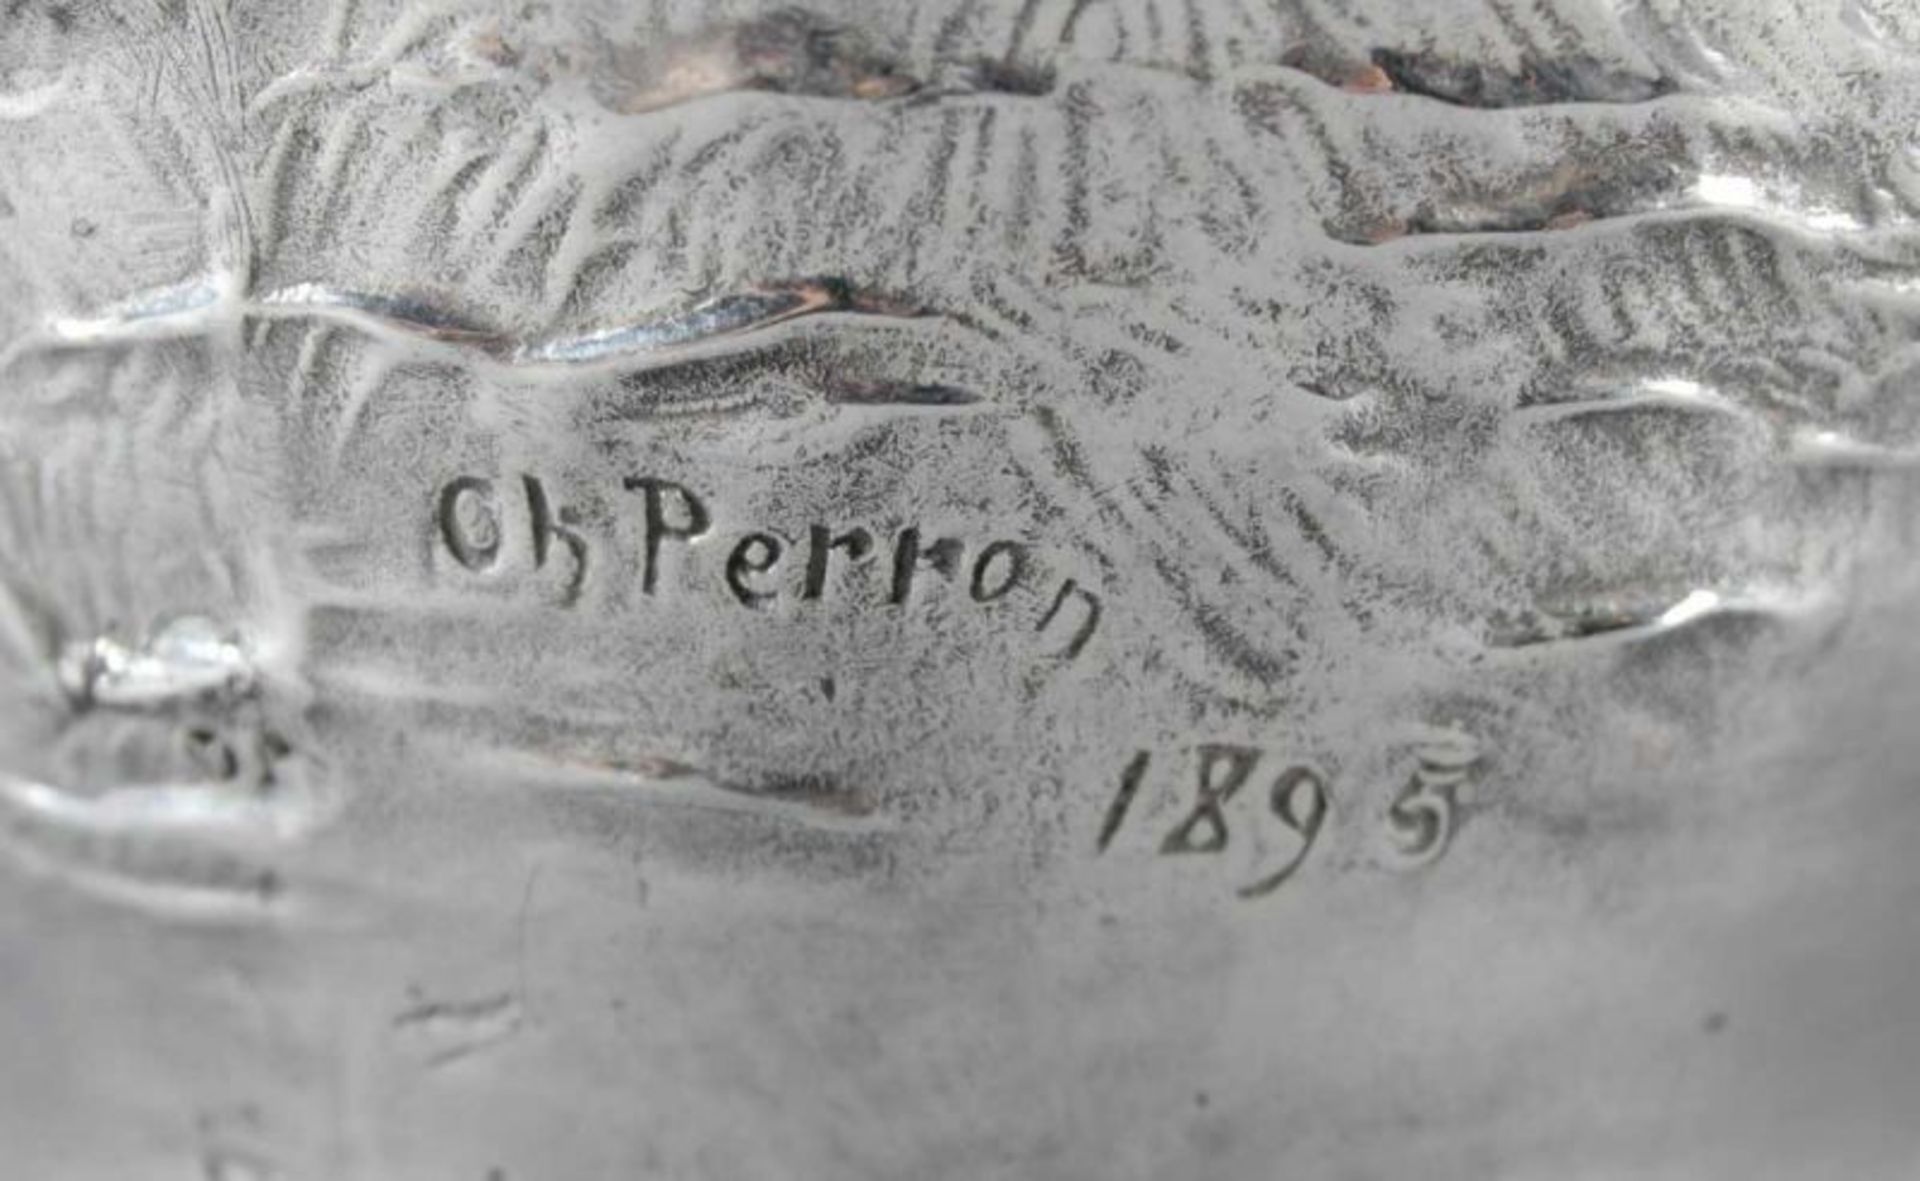 JUGENDSTIL-ZIERKRUG, Metall, H 25, datiert, Charles PERRON, 1895 (vgl. "Etain 1900") 22.00 % buyer's - Bild 5 aus 5